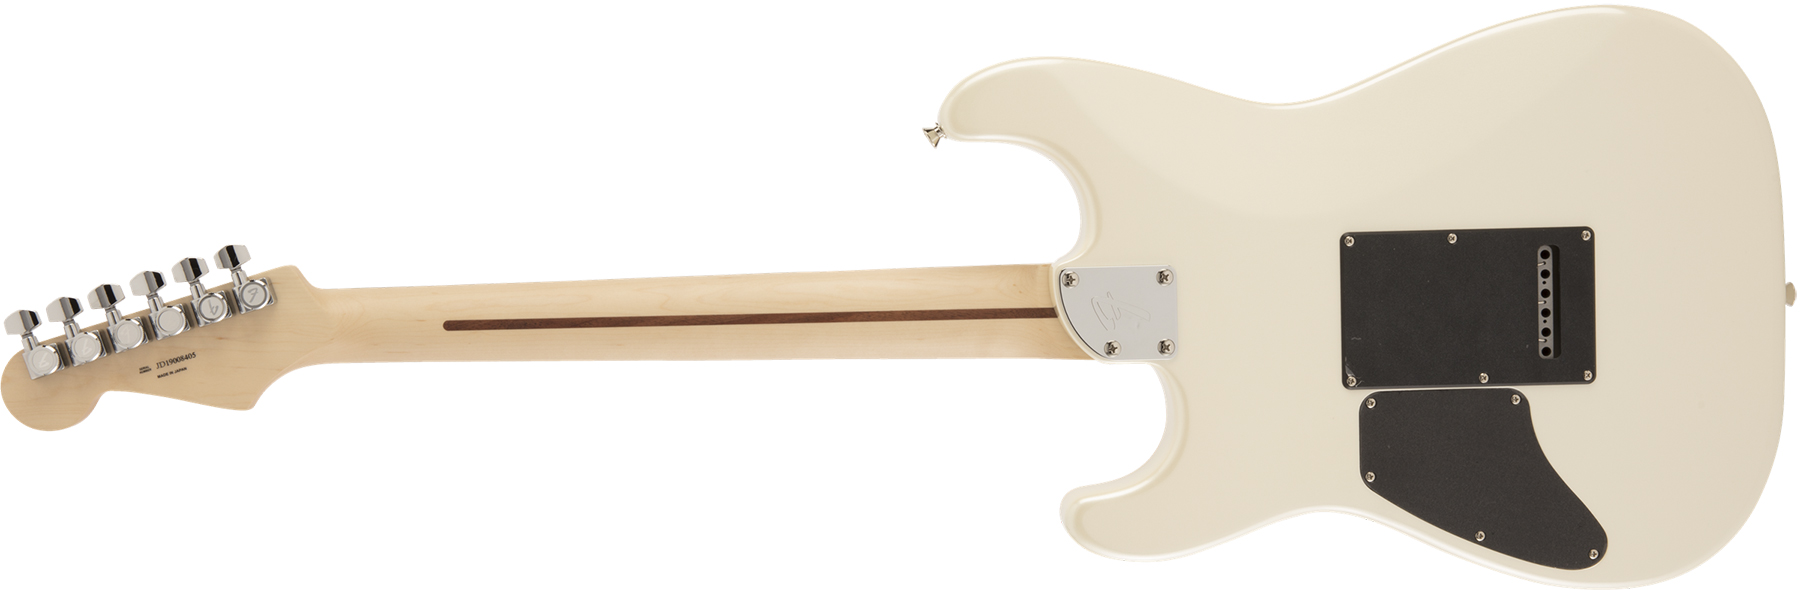 Fender Strat Modern Hh Japon Trem Rw - Olympic Pearl - E-Gitarre in Str-Form - Variation 1